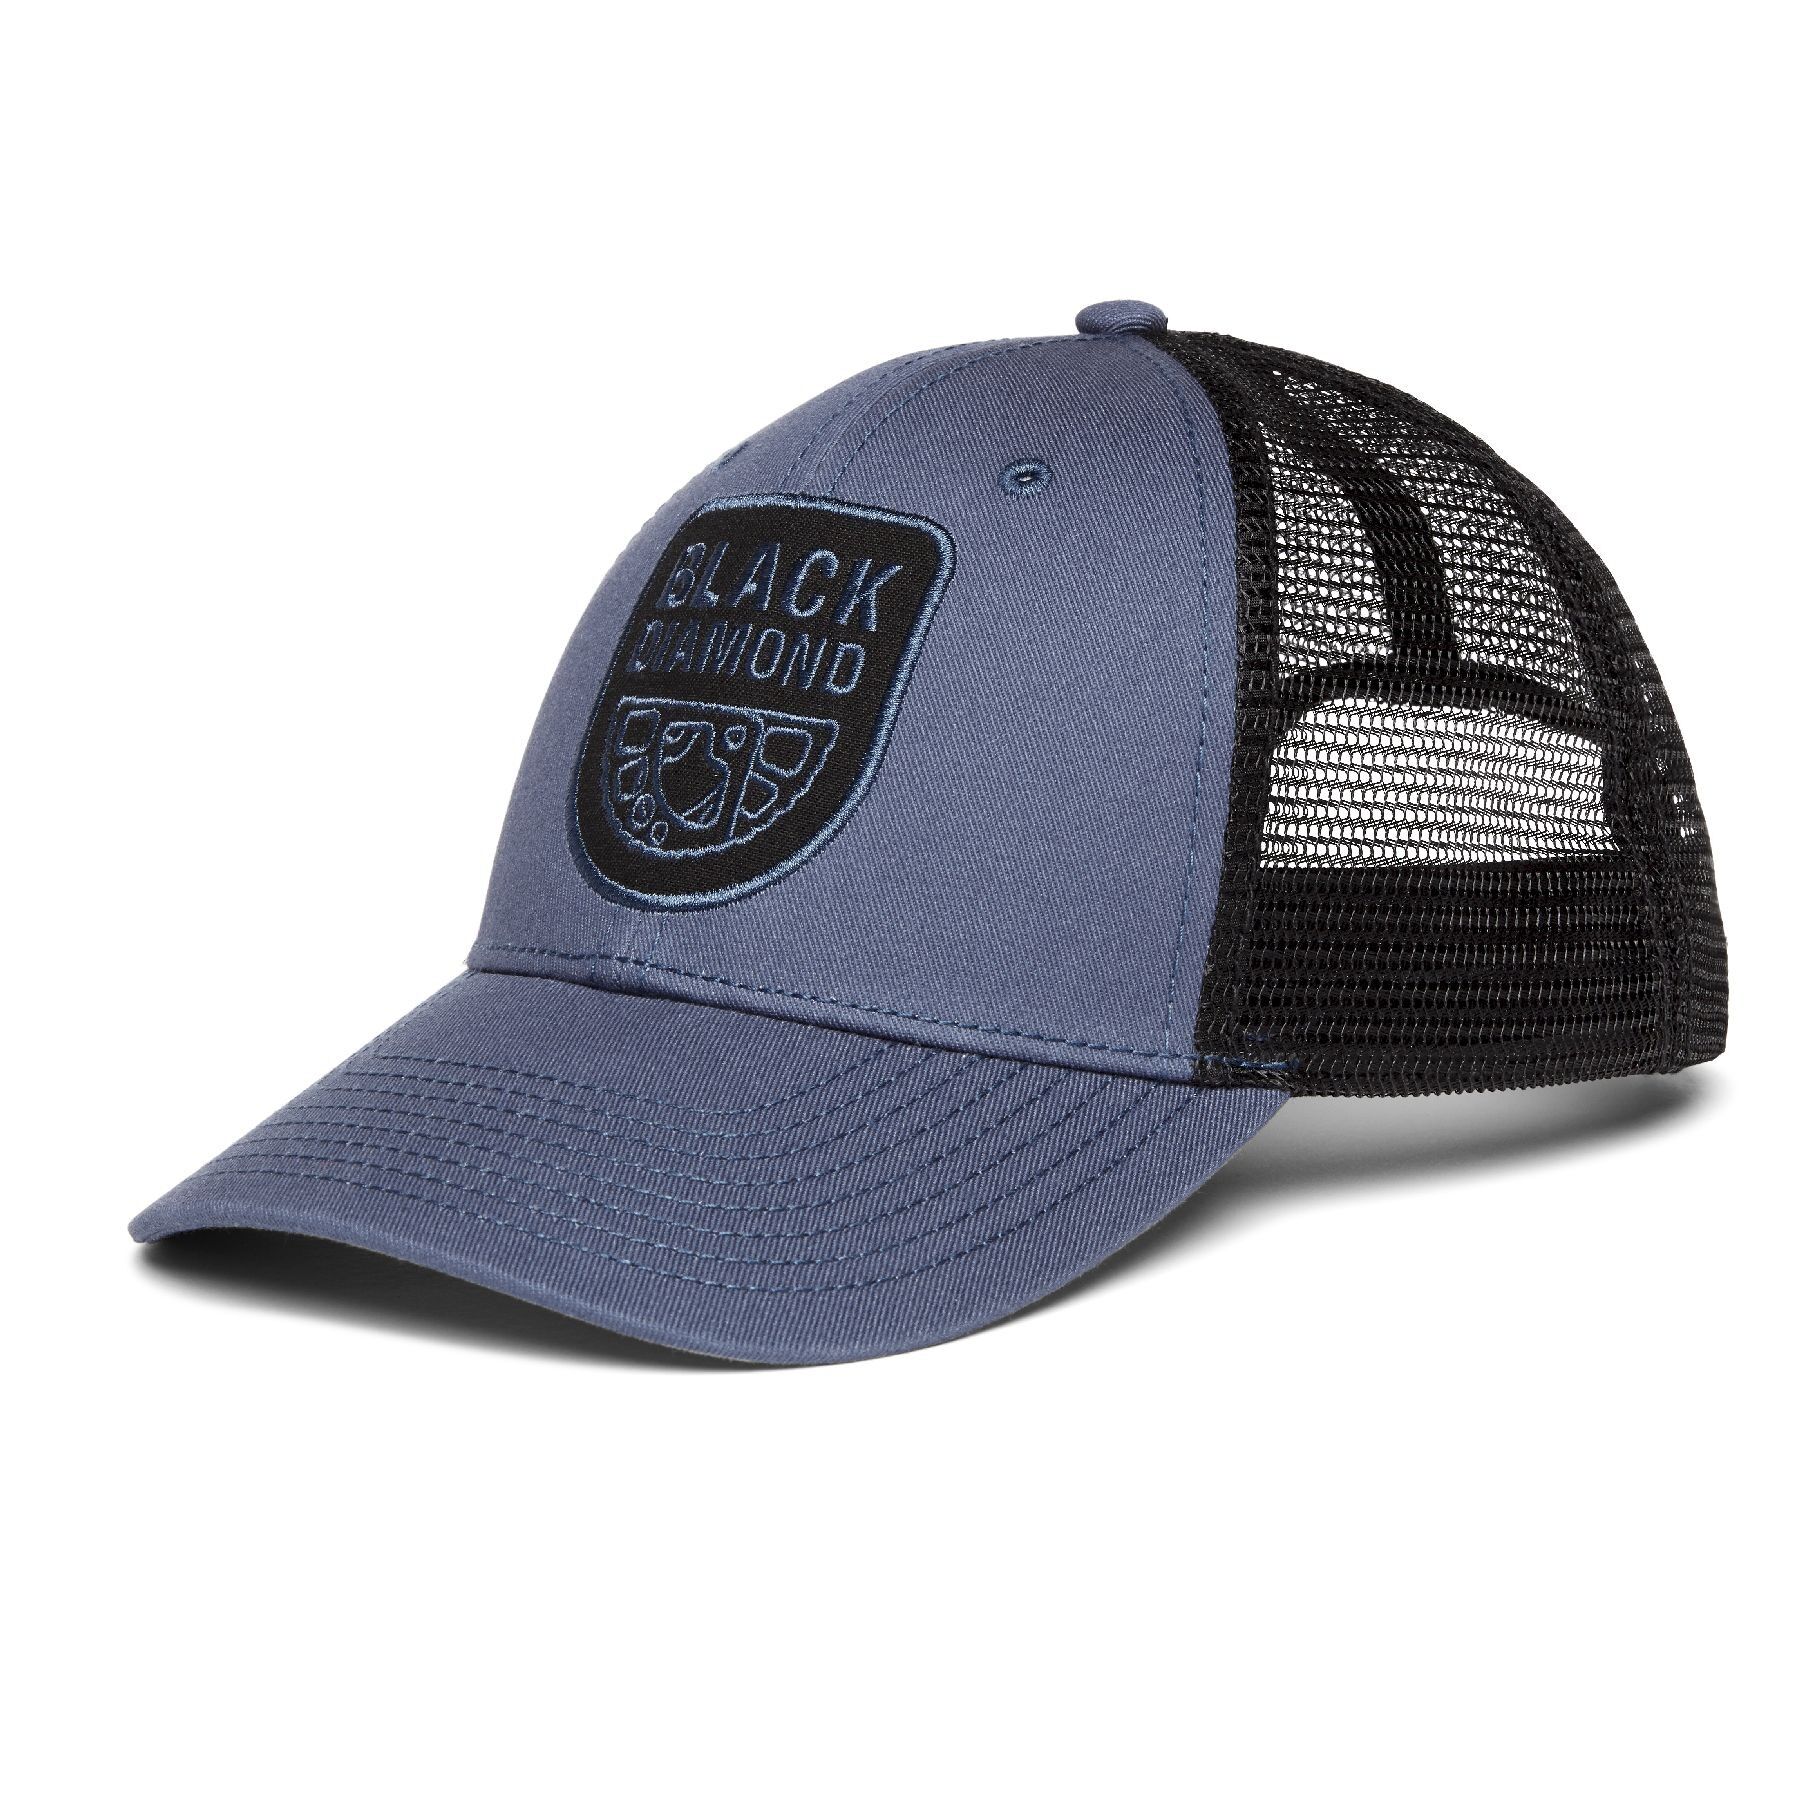 Black Diamond BD Low Profile Trucker Hat - Keps